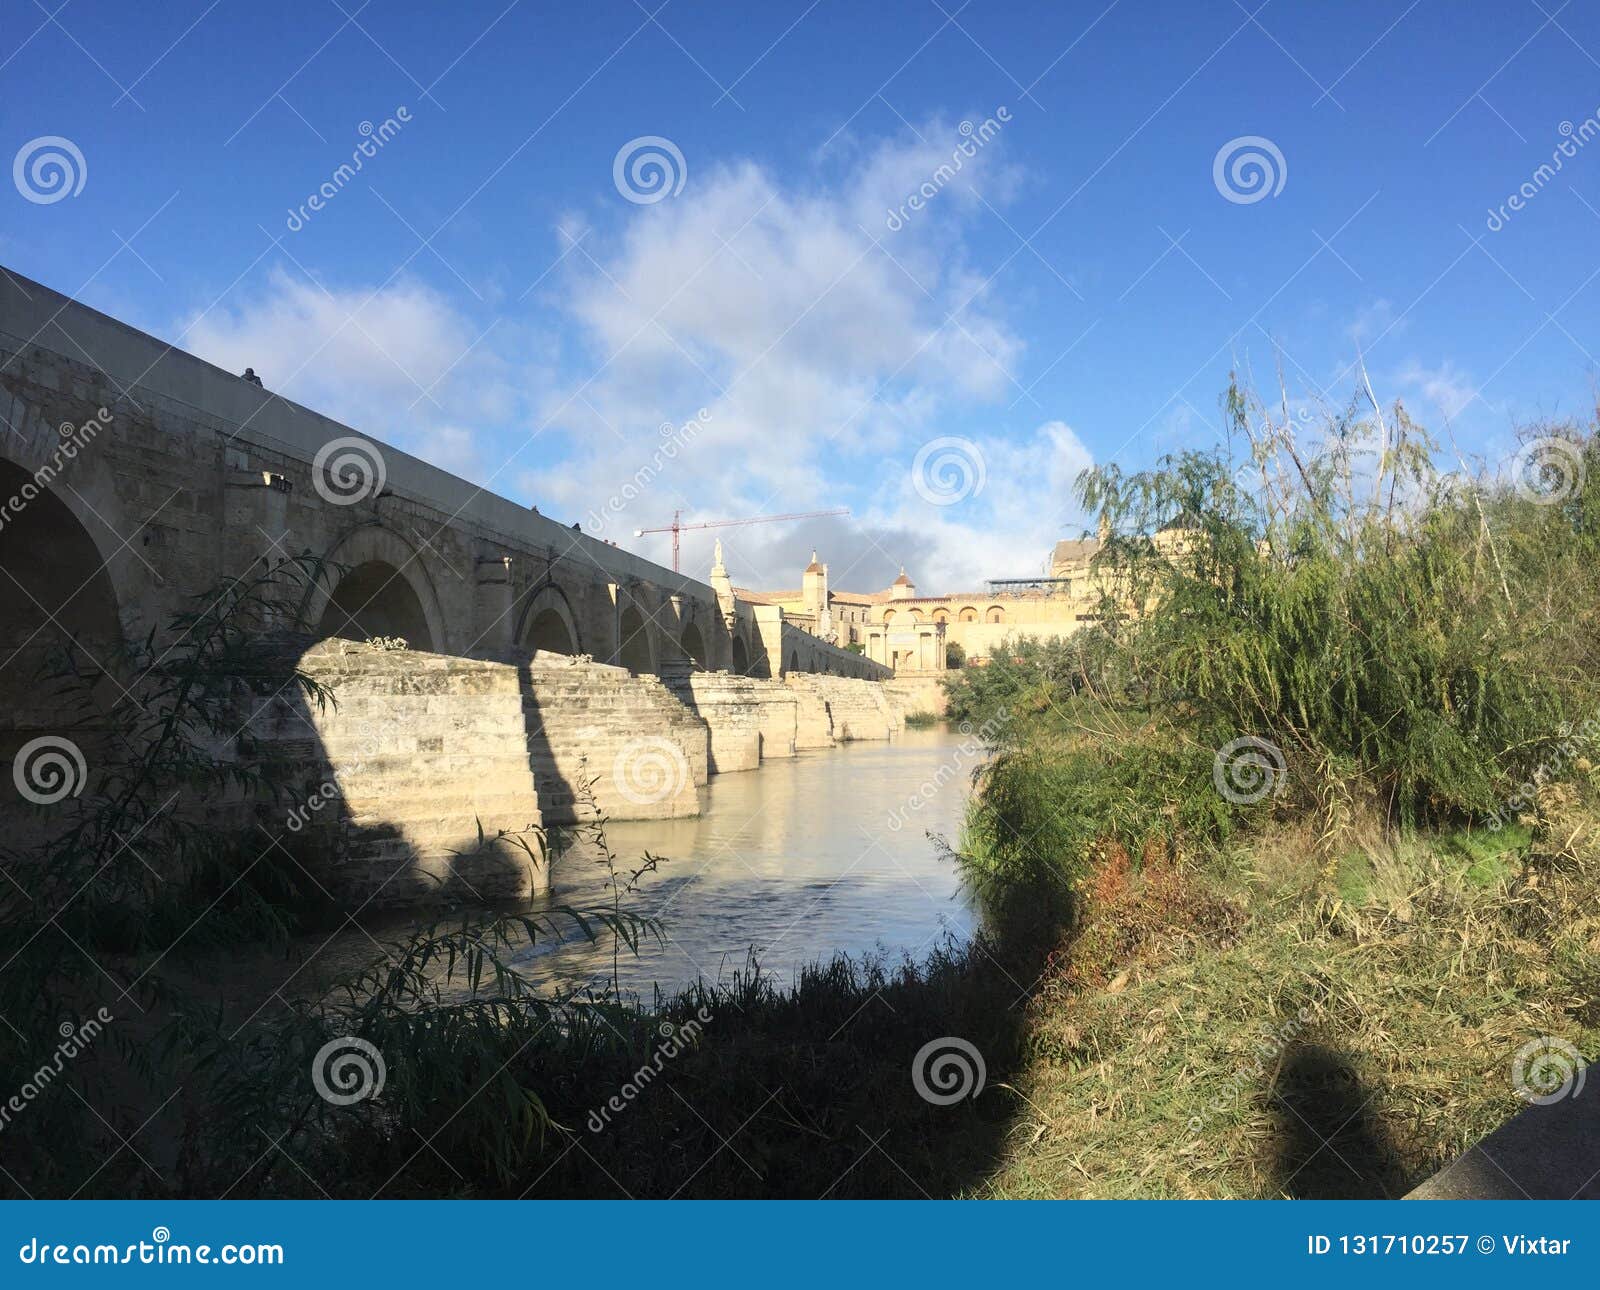 the roman bridge & tower in cordoba ii